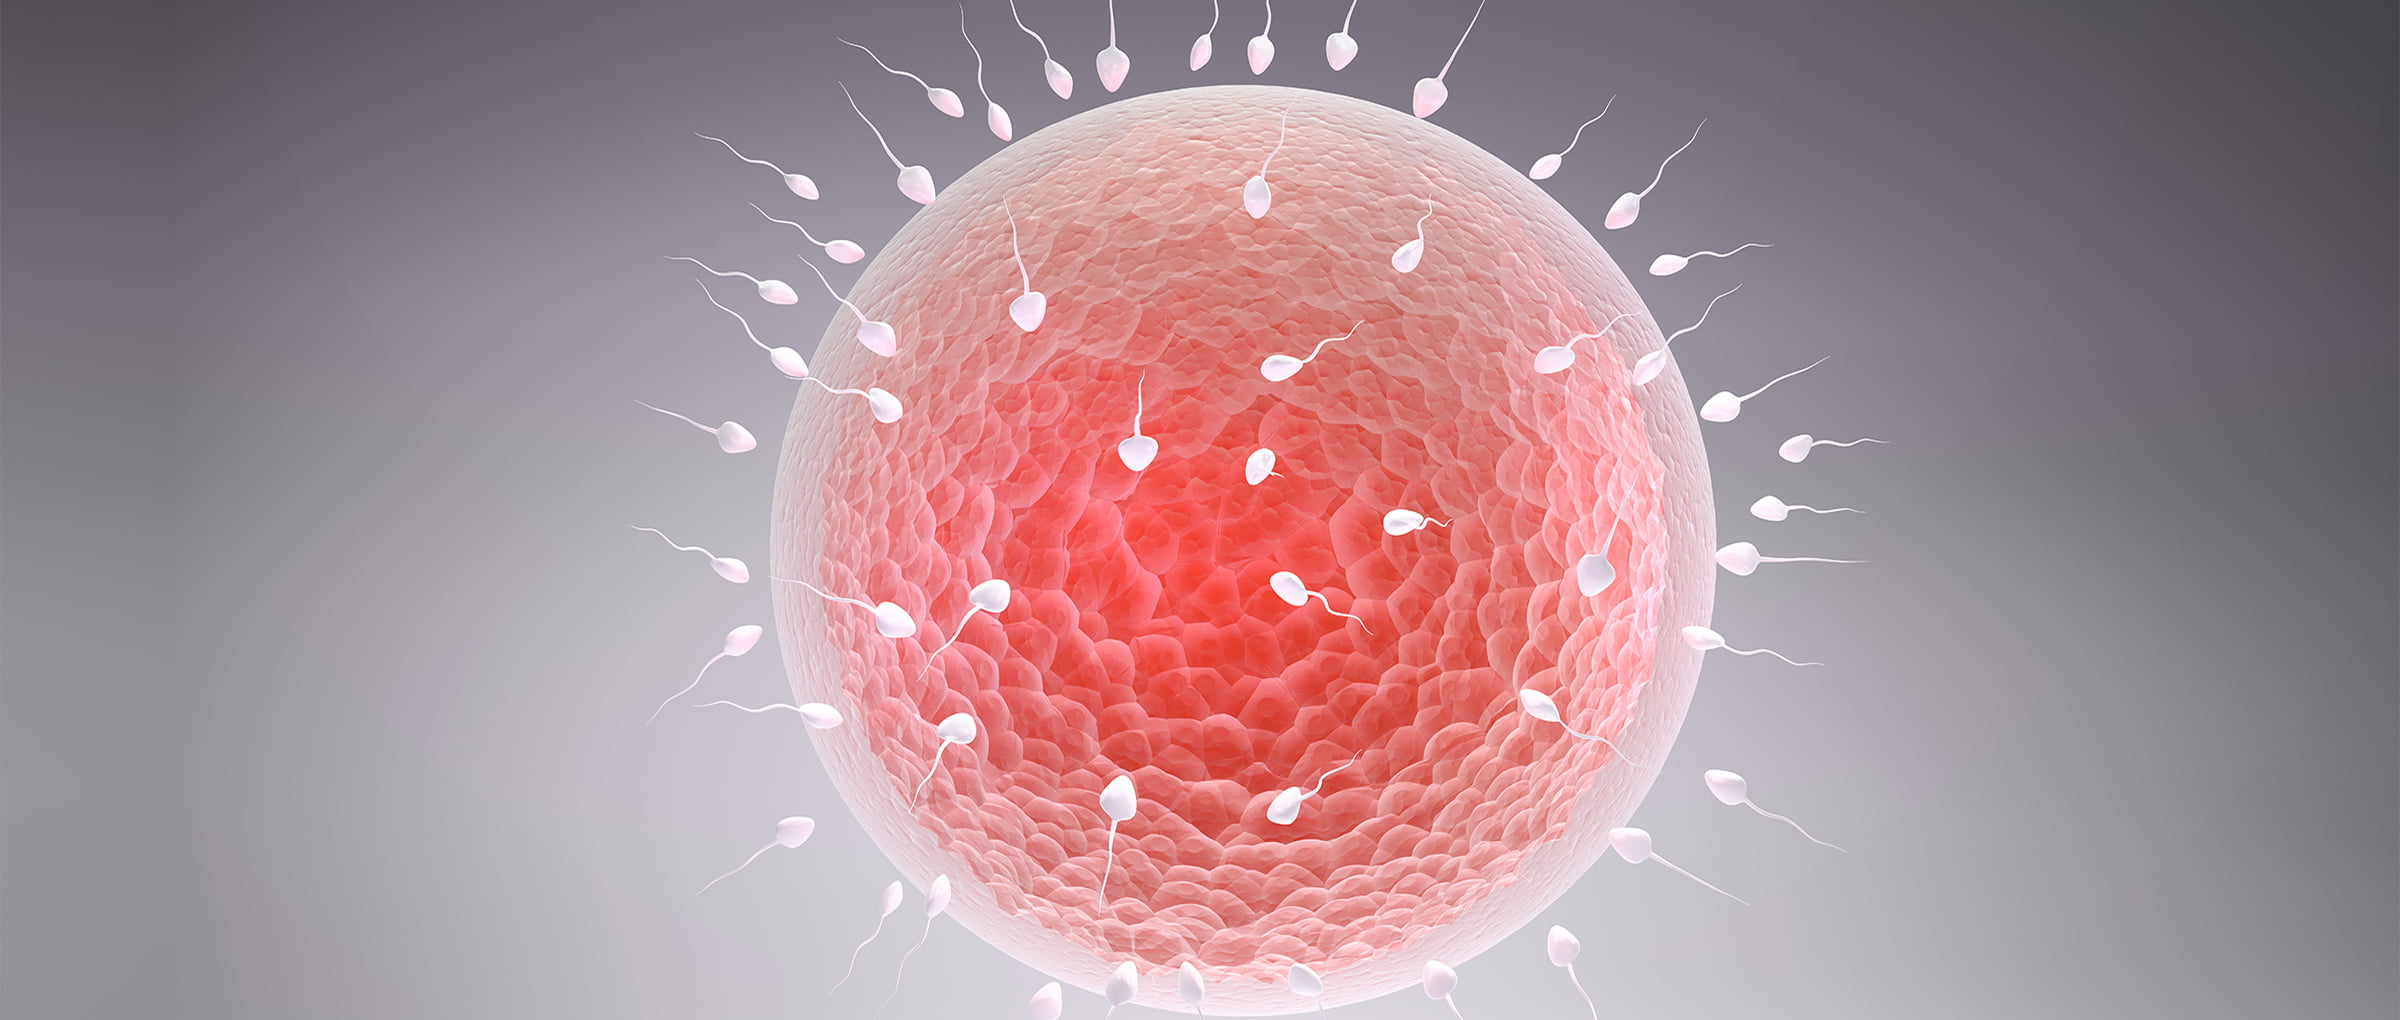 Fecundación in vitro con óvulos donados